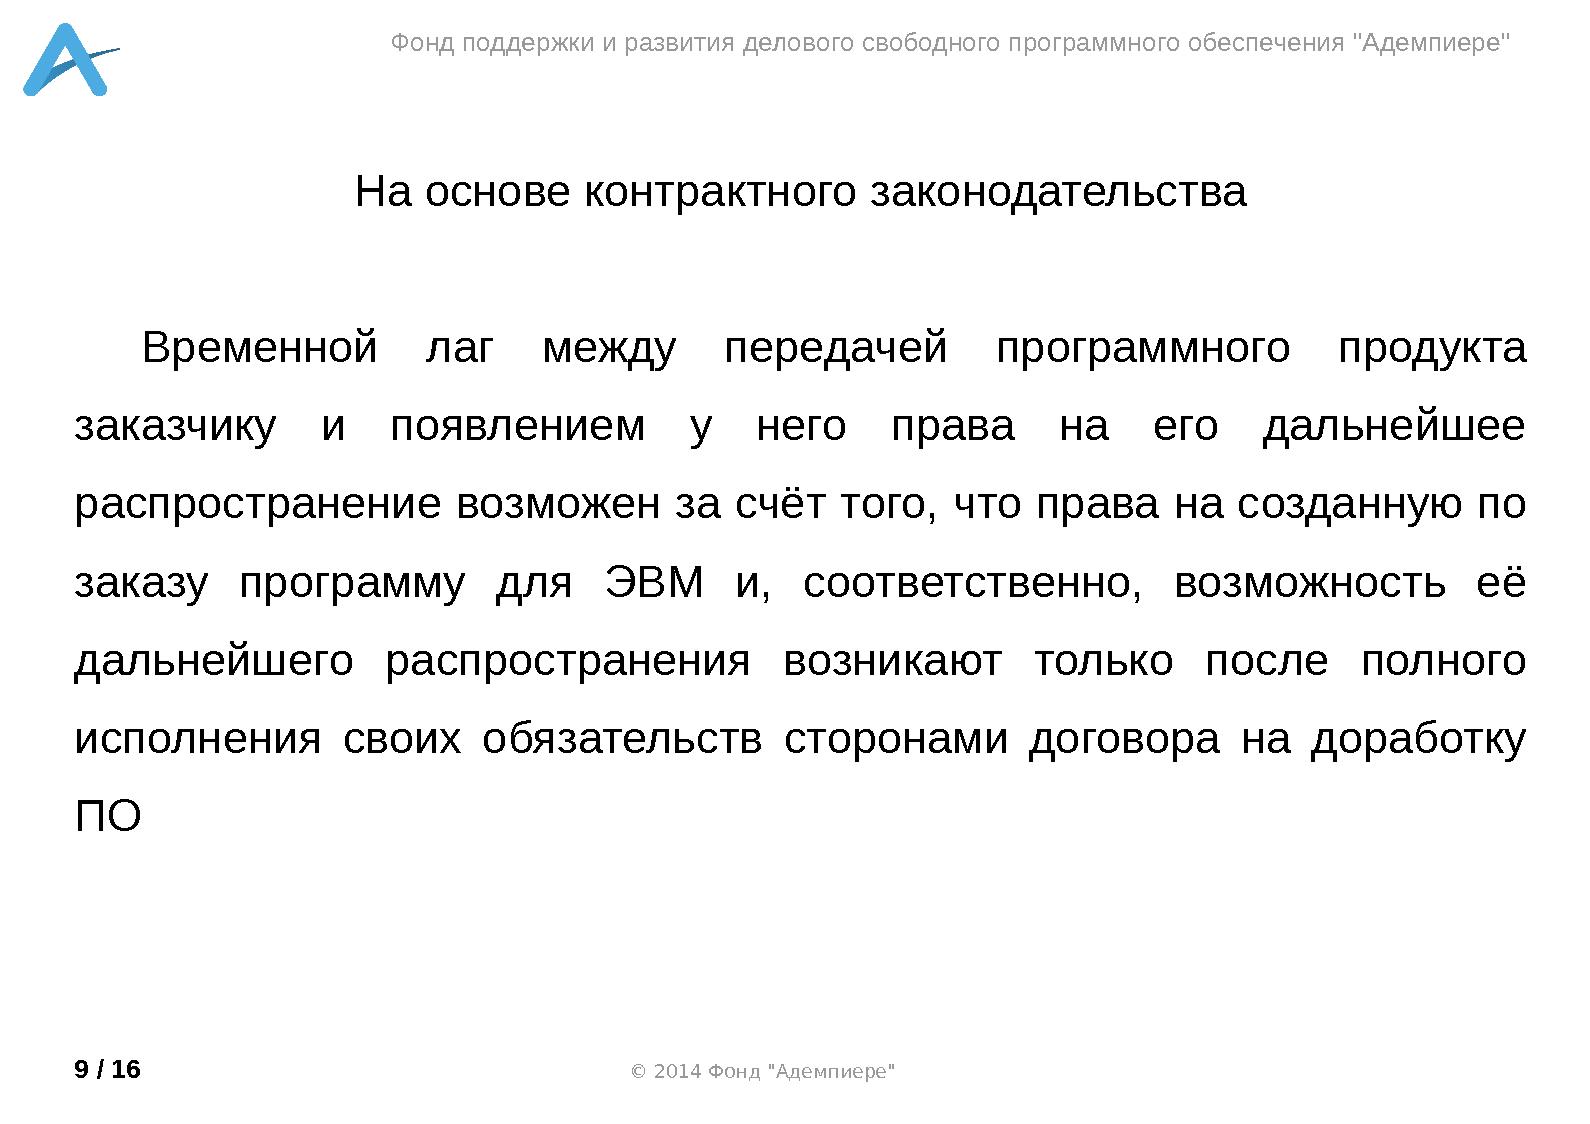 Файл:Коммерциализация СПО под GPL лицензией (Александр Рябиков, OSSDEVCONF-2014).pdf